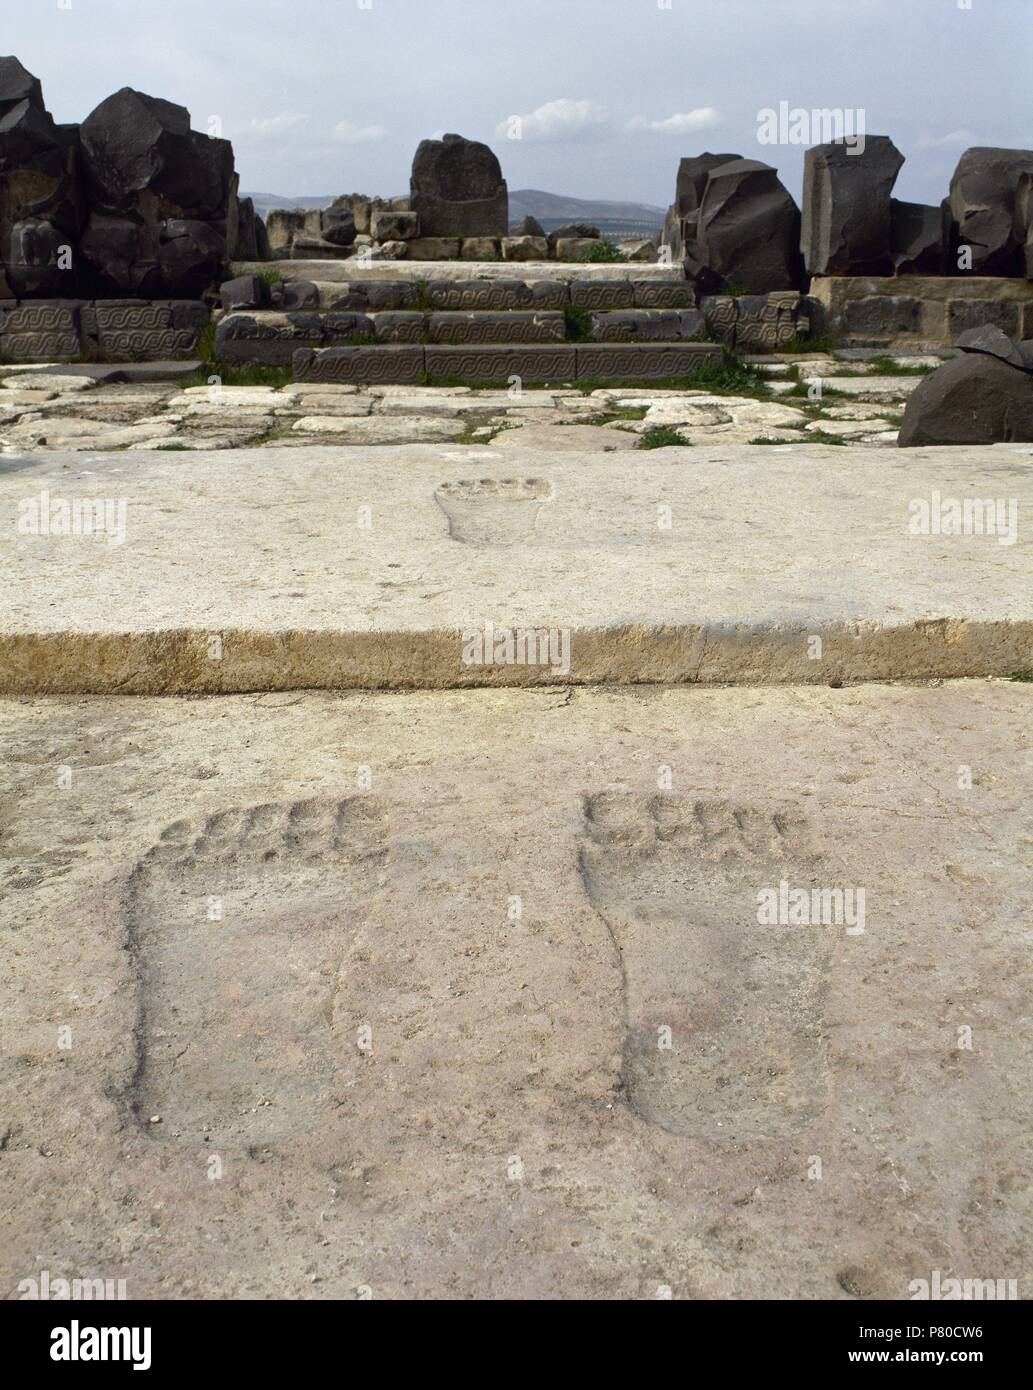 Ain Dara. Età del ferro Siro.Hittita tempio. Footprint. 1300 BC-740 BC. La Siria. Foto prima di siria guerra civile. Foto Stock